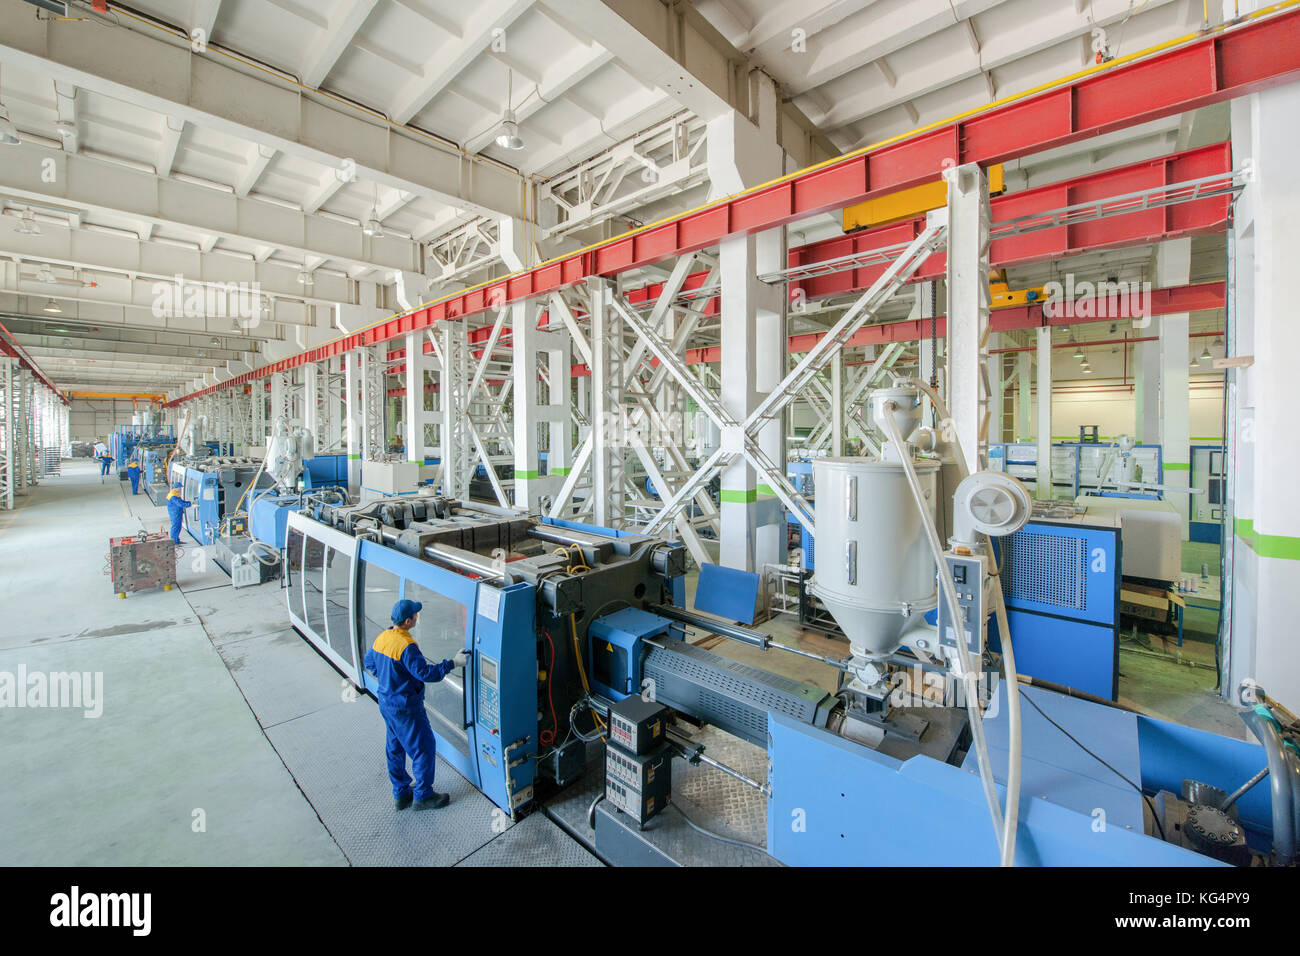 Industrielle Spritzgussmaschine Maschine für die Herstellung von Kunststoffteilen mit Polymeren, die in der Verwaltung der Arbeitnehmer Stockfoto